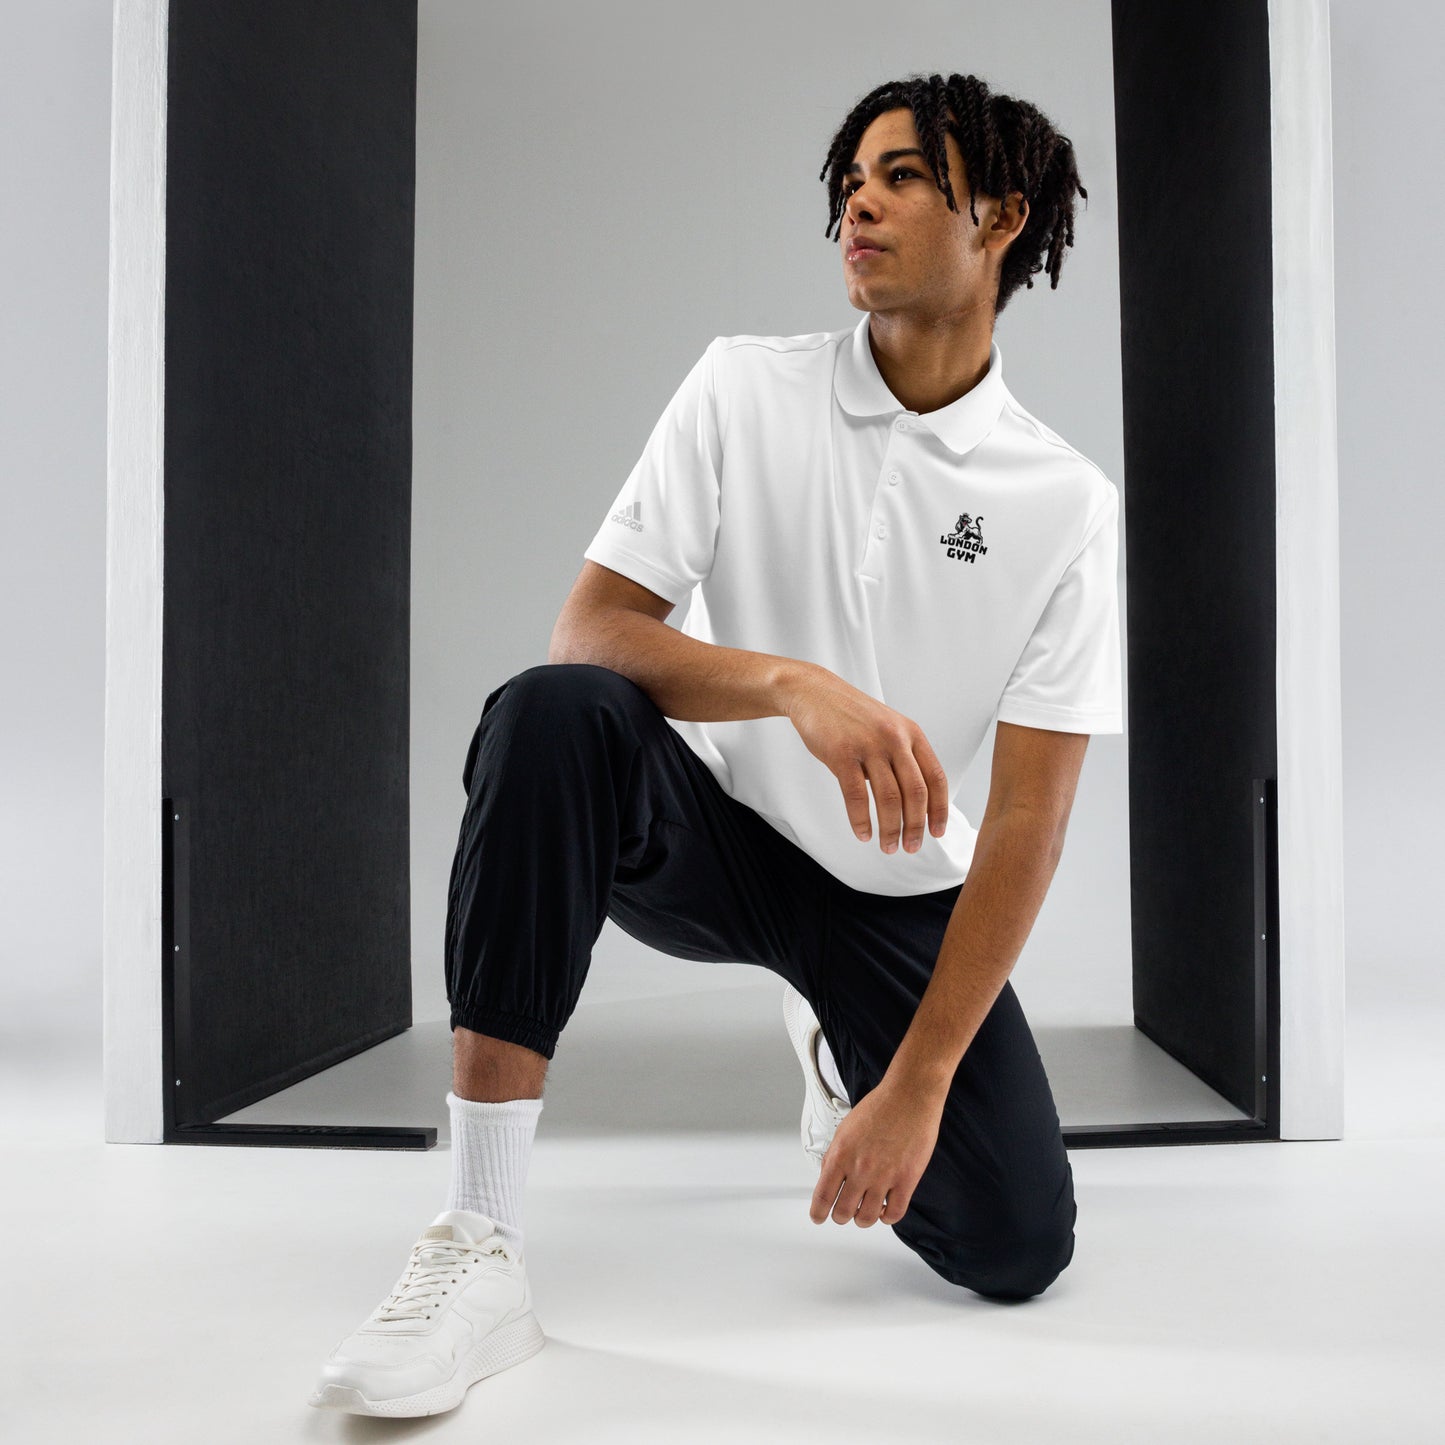 Adidas Premium Polo Men Shirt Black and White